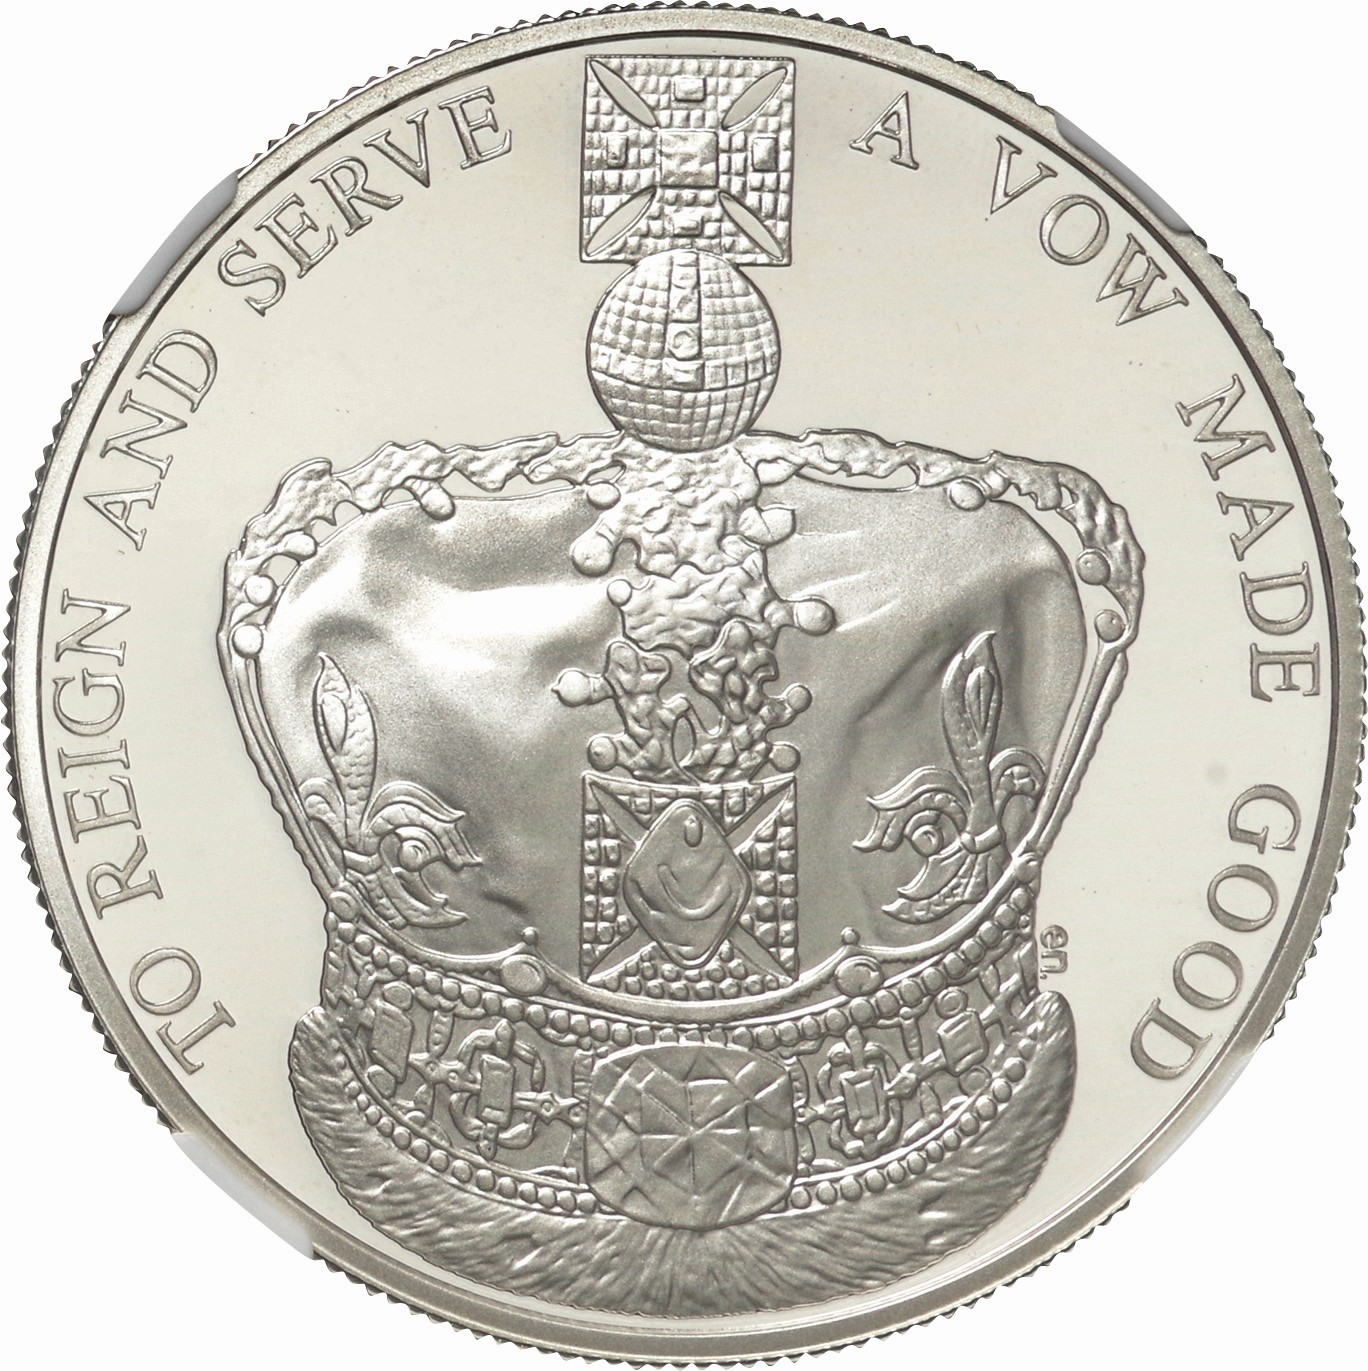 2021 鏡の国のアリス 2ポンド1オンスプルーフカラー銀貨 - コレクション